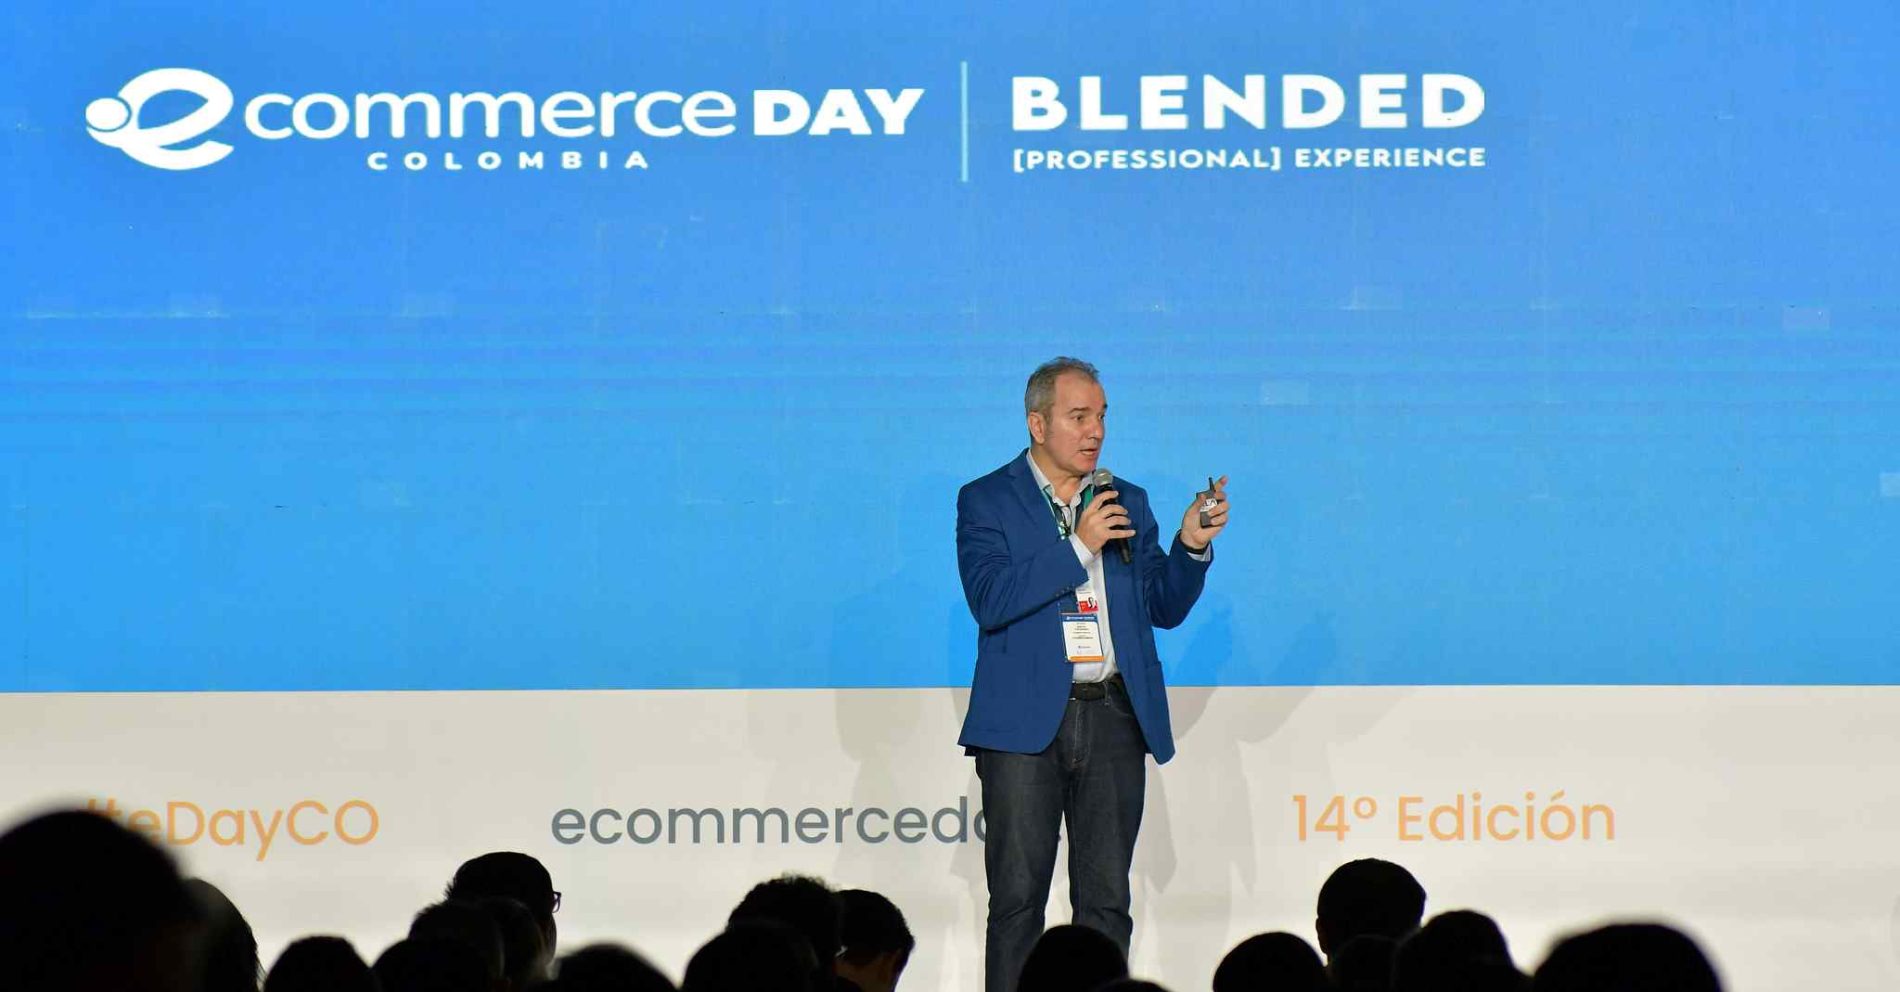 El eCommerce Day Colombia reunió con éxito a los profesionales de la industria digital en un solo lugar